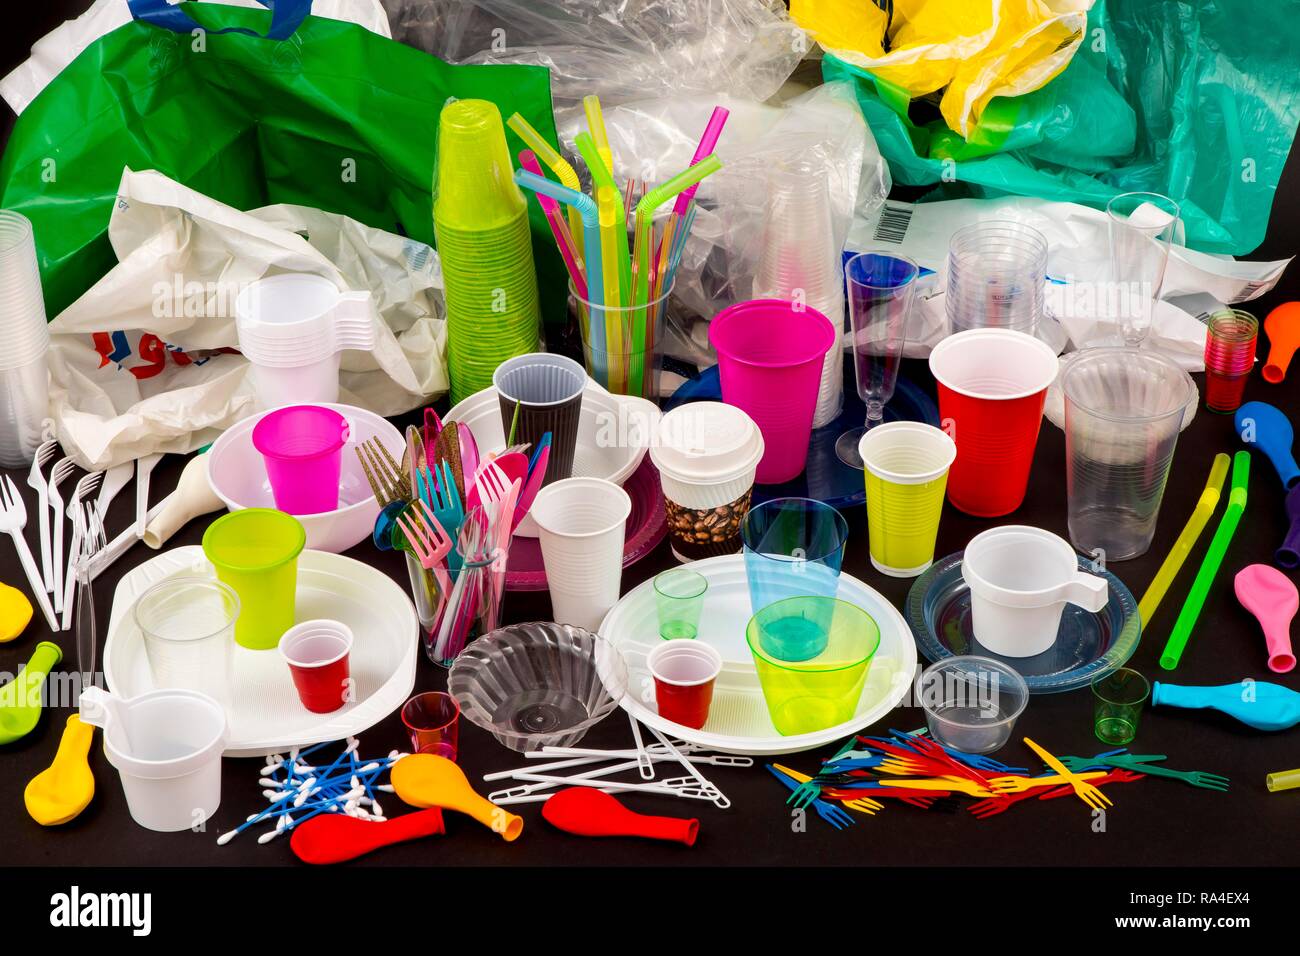 Einweggeschirr, Kunststoff Besteck, Geschirr aus Kunststoff, Kunststoff, Plastikbecher, Plastiktüten und andere Abfälle aus Kunststoffen Stockfoto